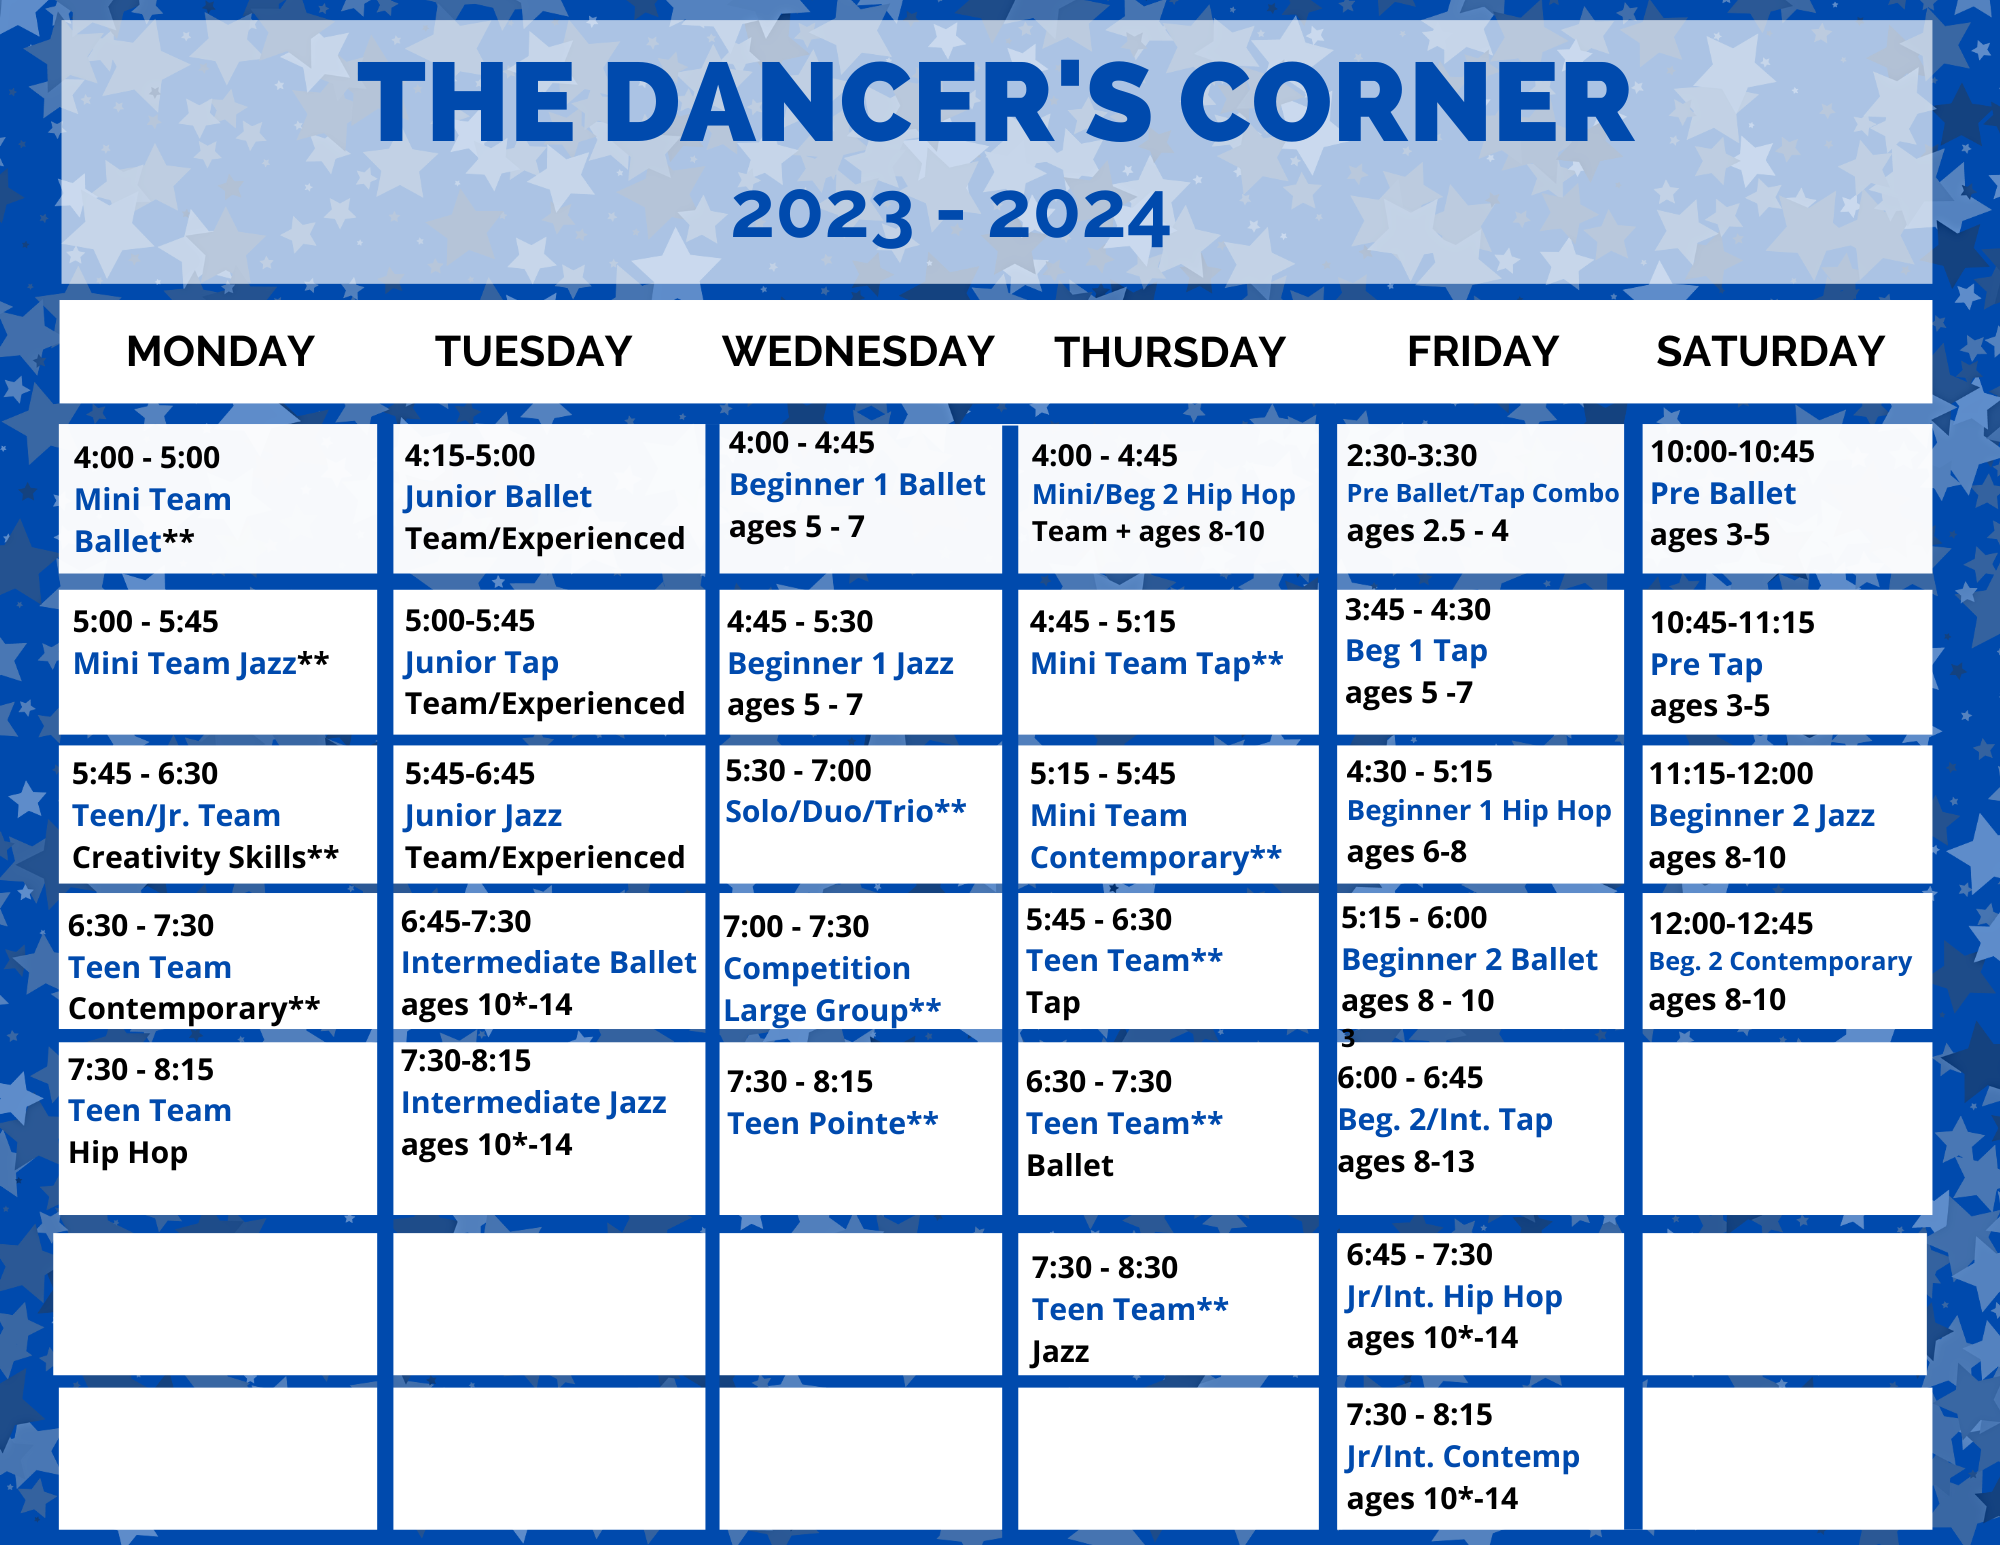 The Dancer's Corner Schedule 2023-2024